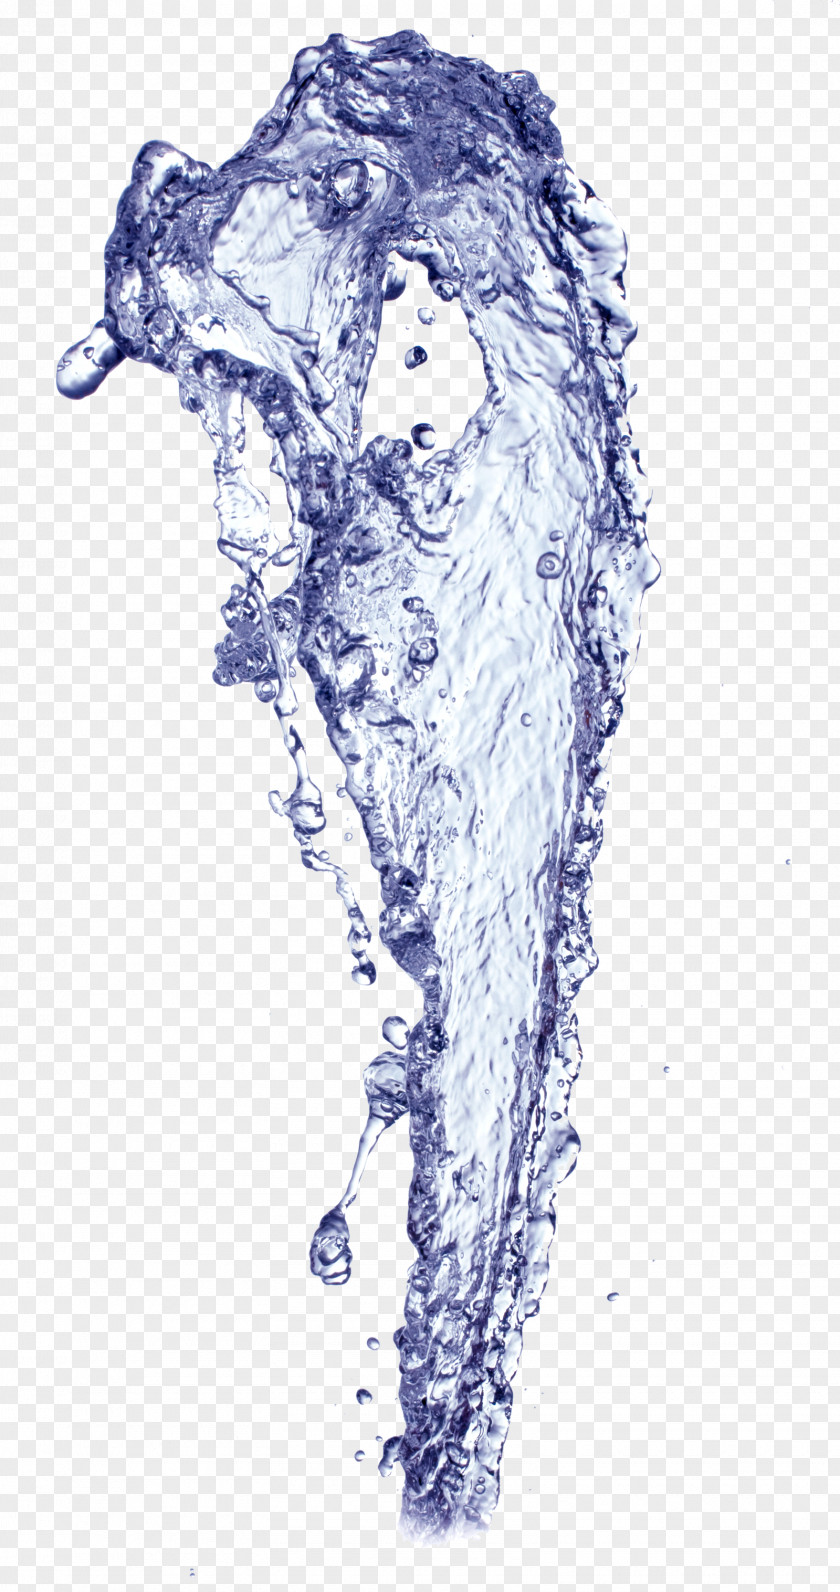 Droplets Water Drop Clip Art PNG